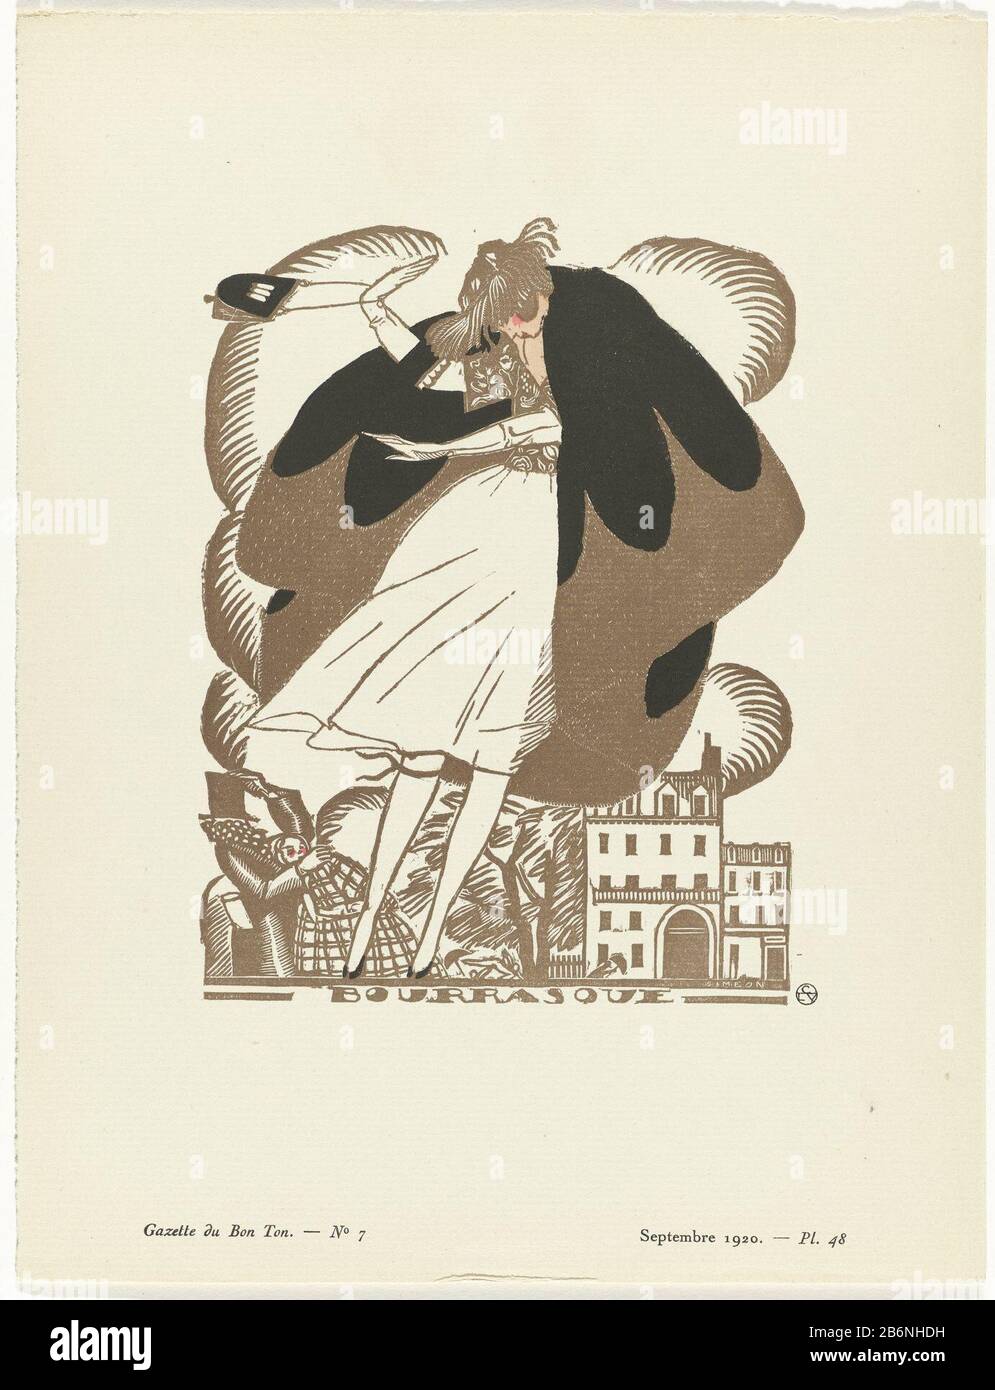 Gazette du bon ton, 1920 - no 7, Pl 48 Bourrasque (objet op titel) femme  debout à la cape brune bordée de fourrure. Sous une robe blanche au genou.  Gants. Vers le